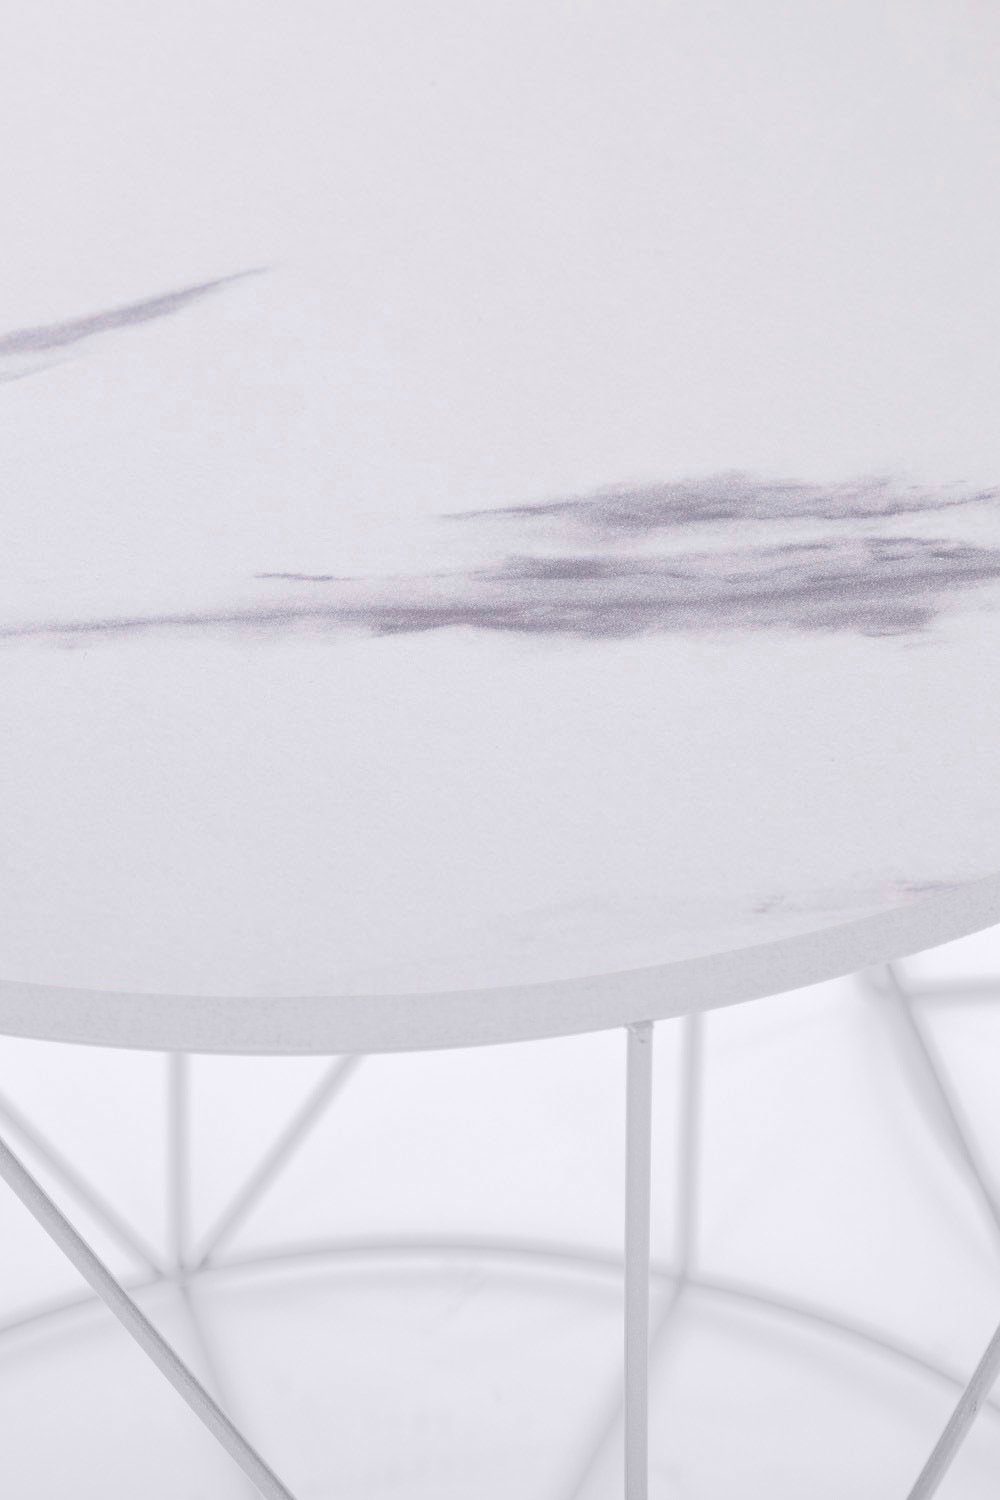 Rundini, Gestell, Beistelltisch Flair Weiß my | Design lackiertem Skandinavischem Design | Platte Naturbelassene Weiß Weiß/Marmor im